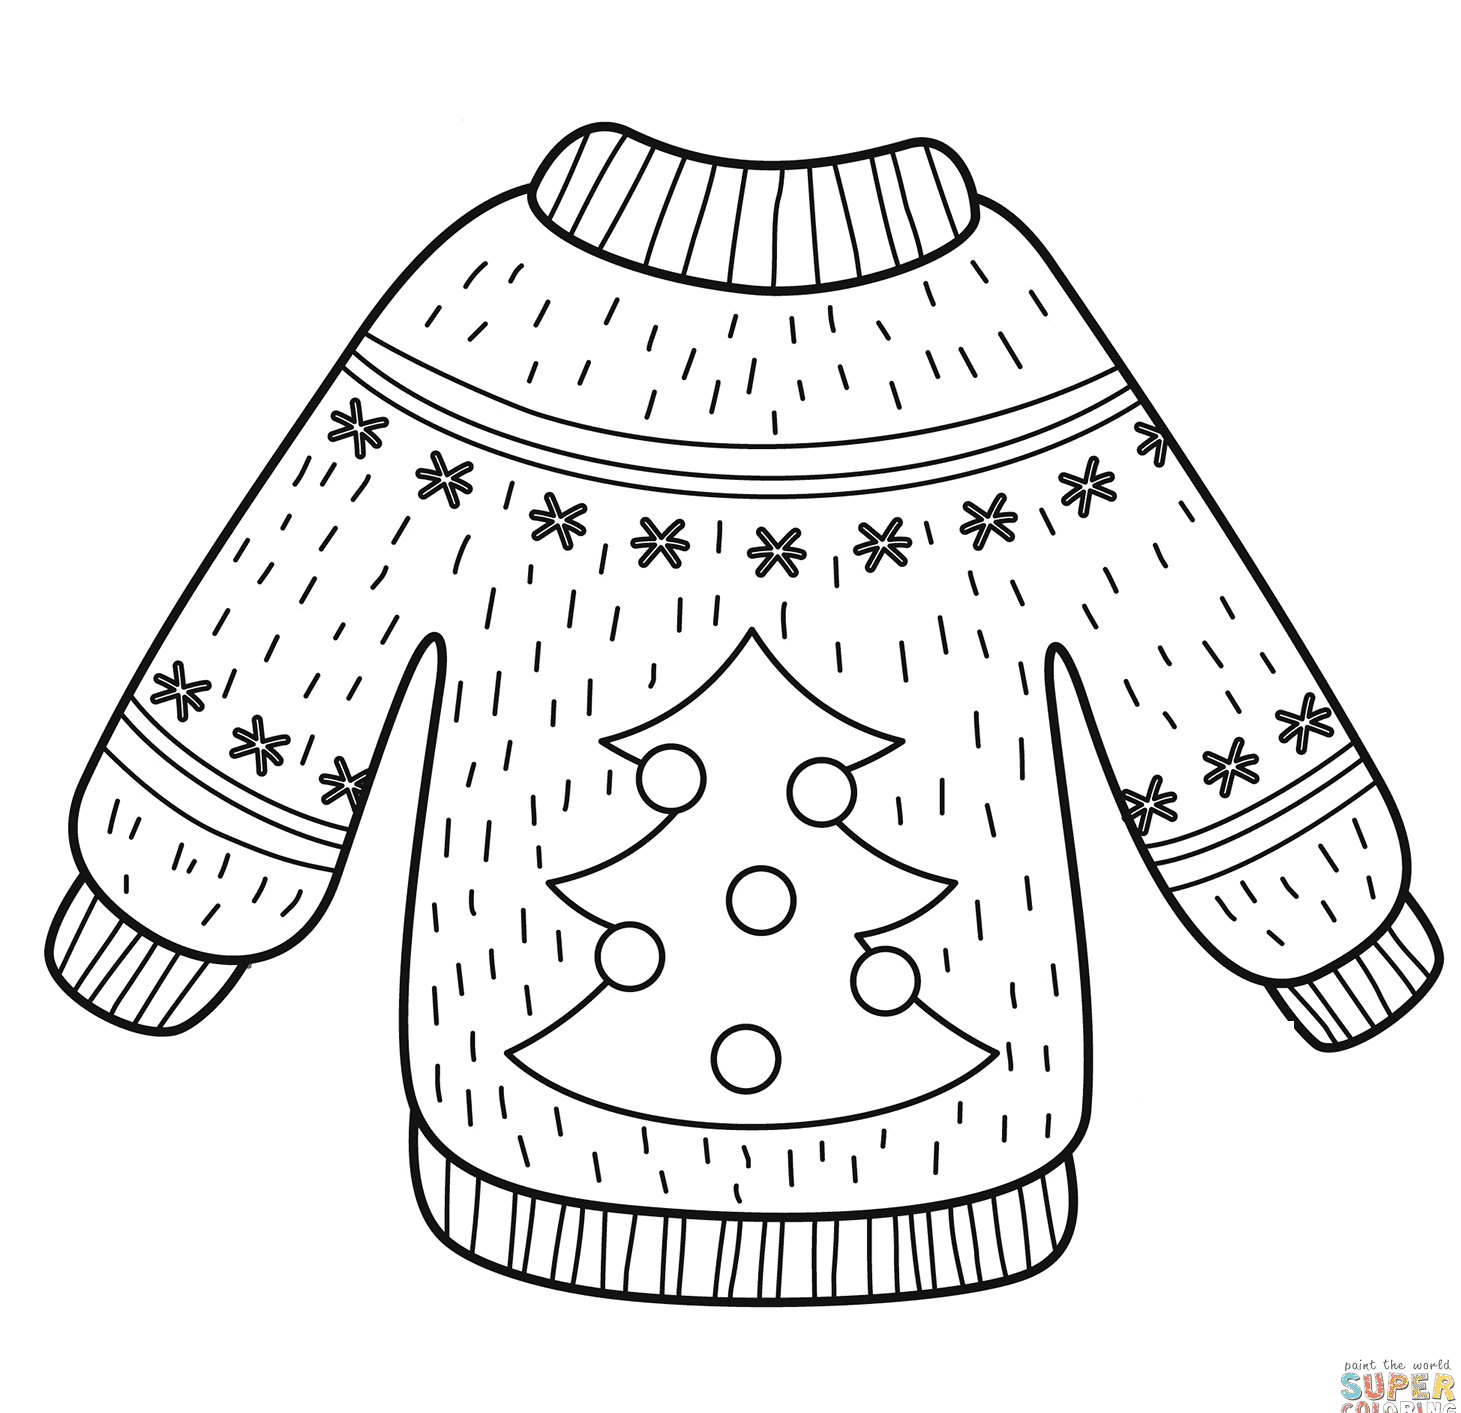 Mooie trui met kerstboom van Christmas Sweater